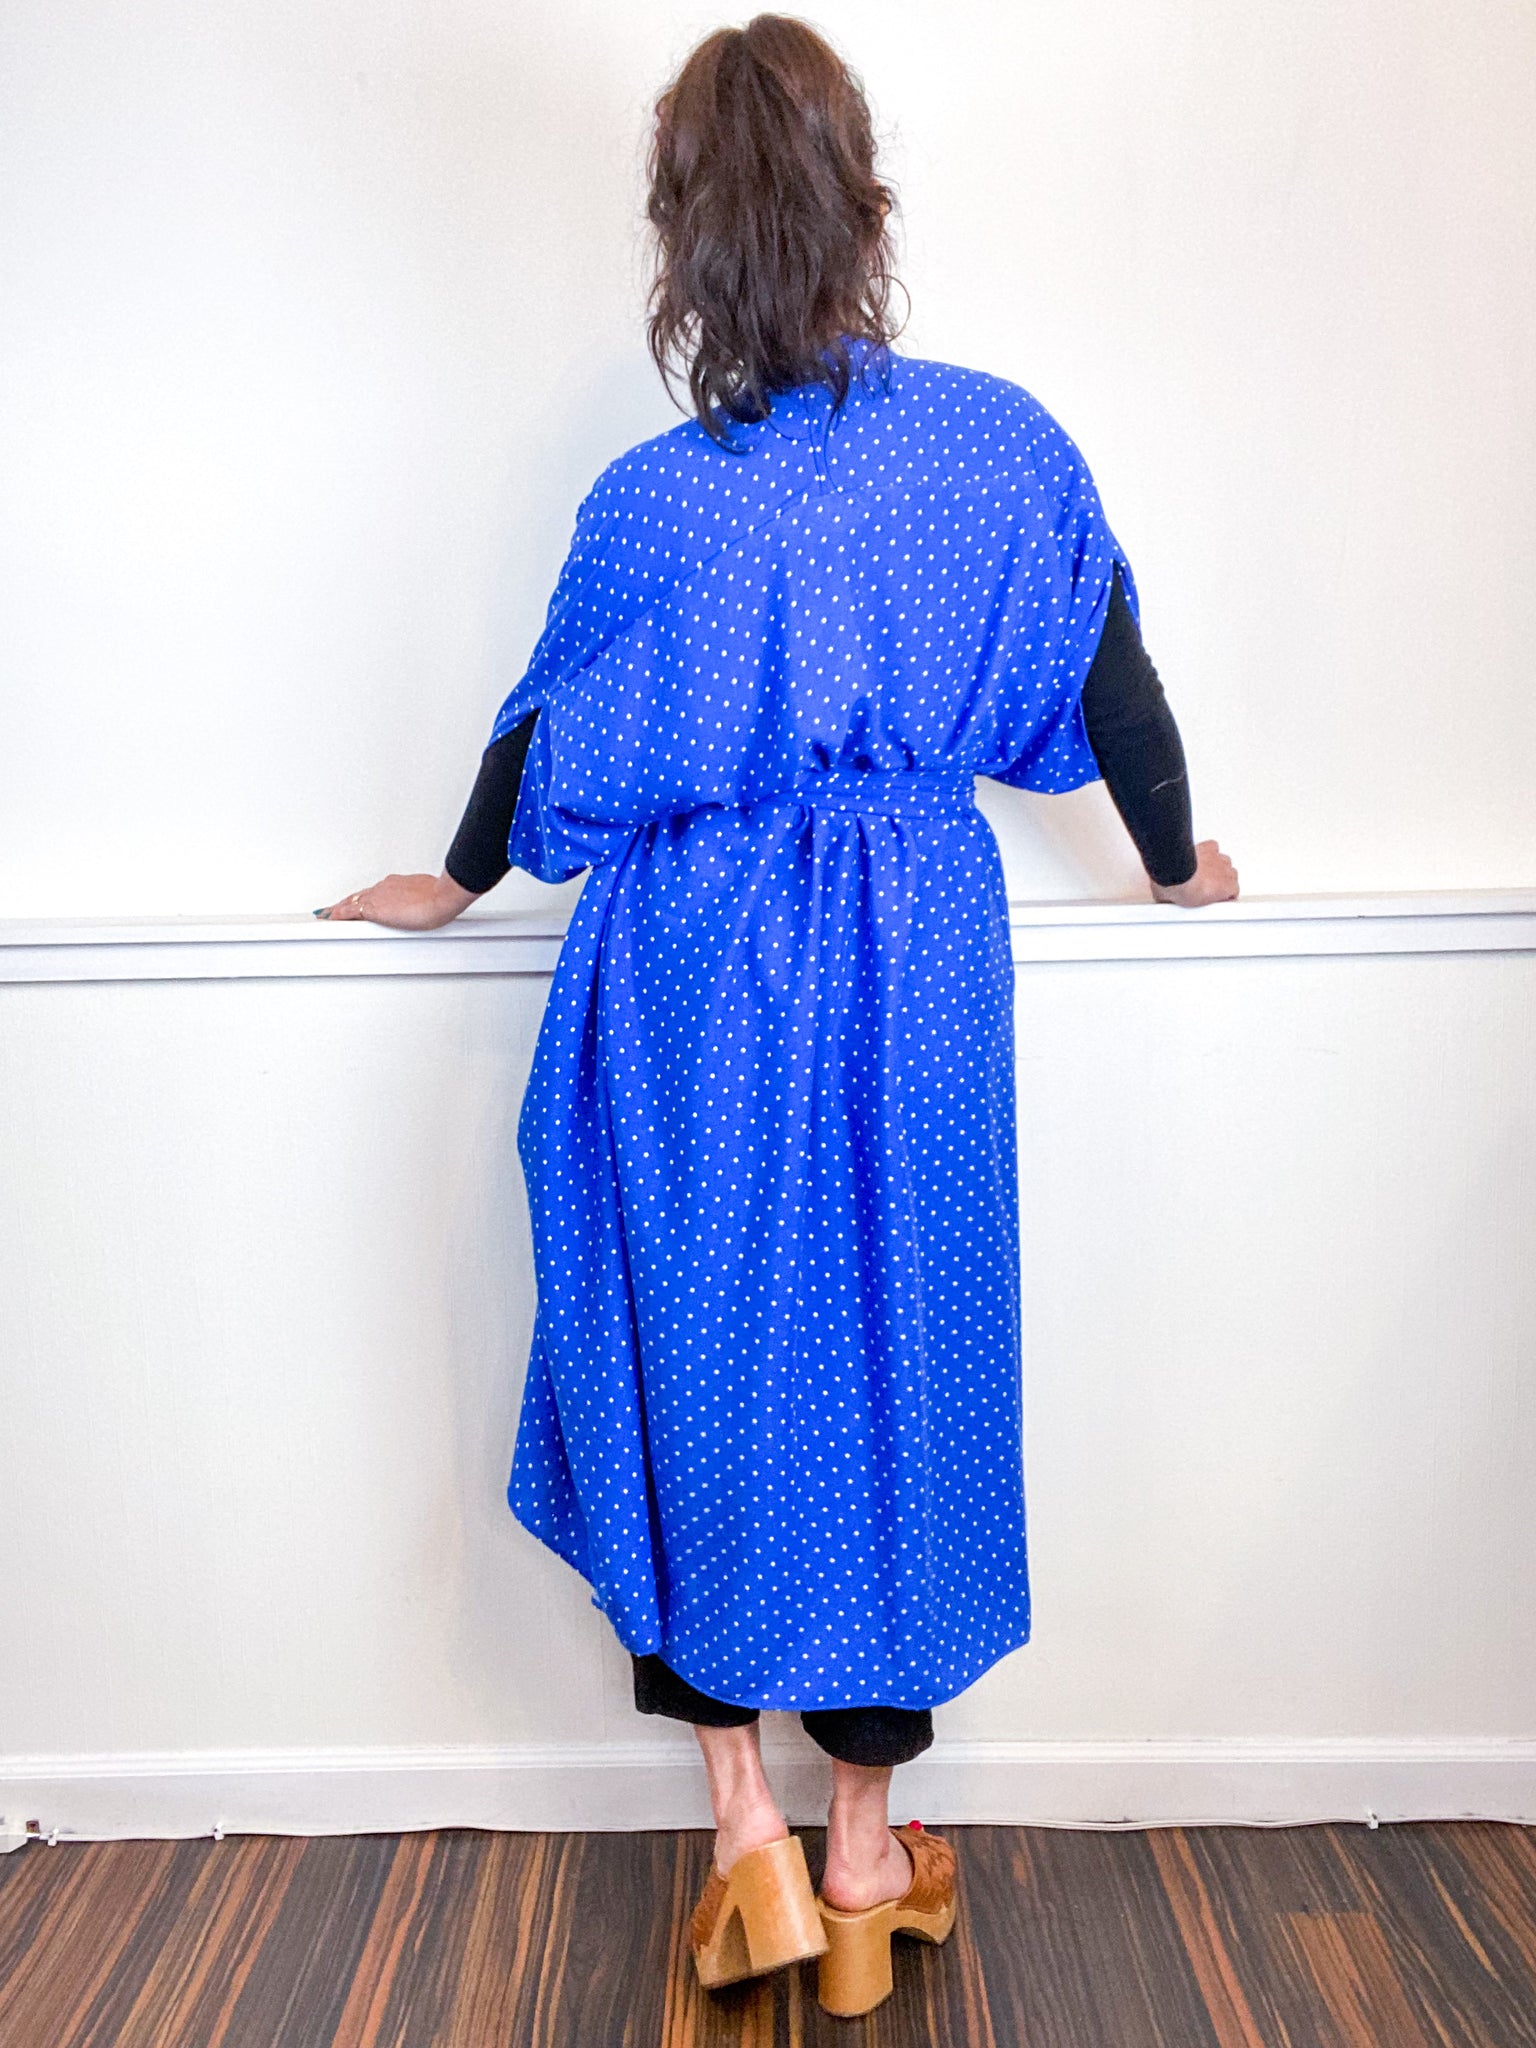 Print High Low Kimono Royal Blue Dots Rayon Challis